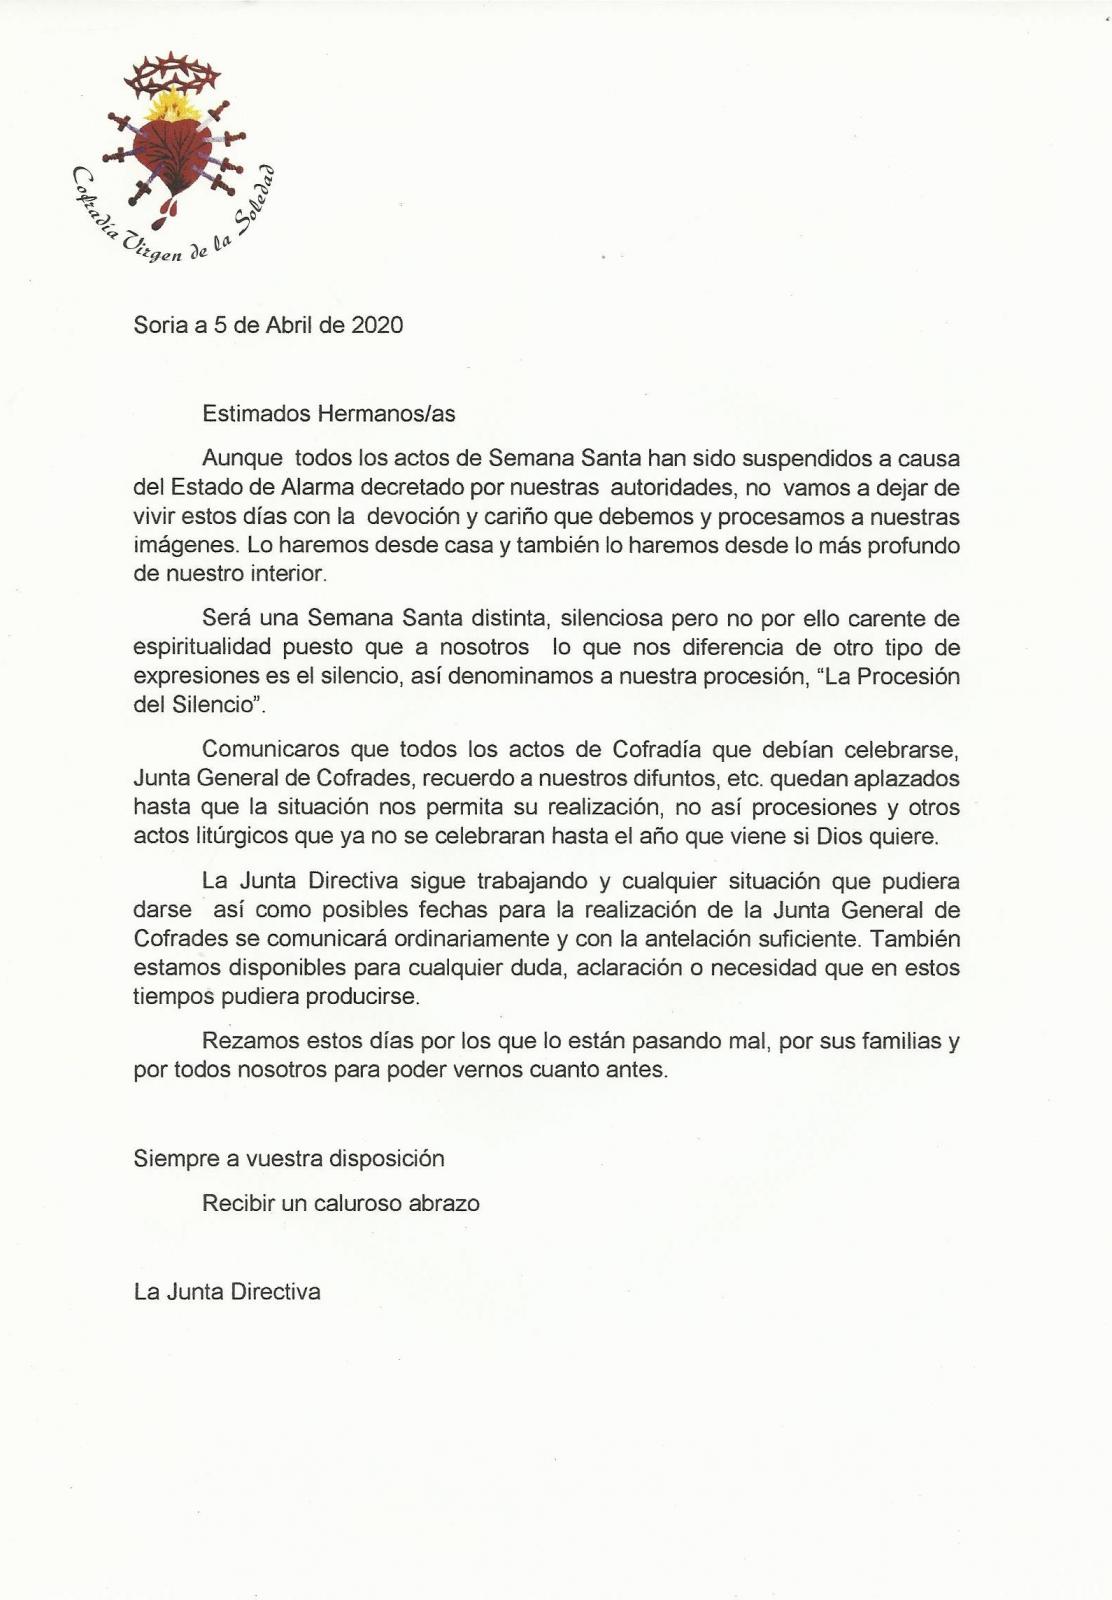 COMUNICADO OFICIAL DE LA JUNTA DIRECTIVA PARA LA SEMANA SANTA 2020